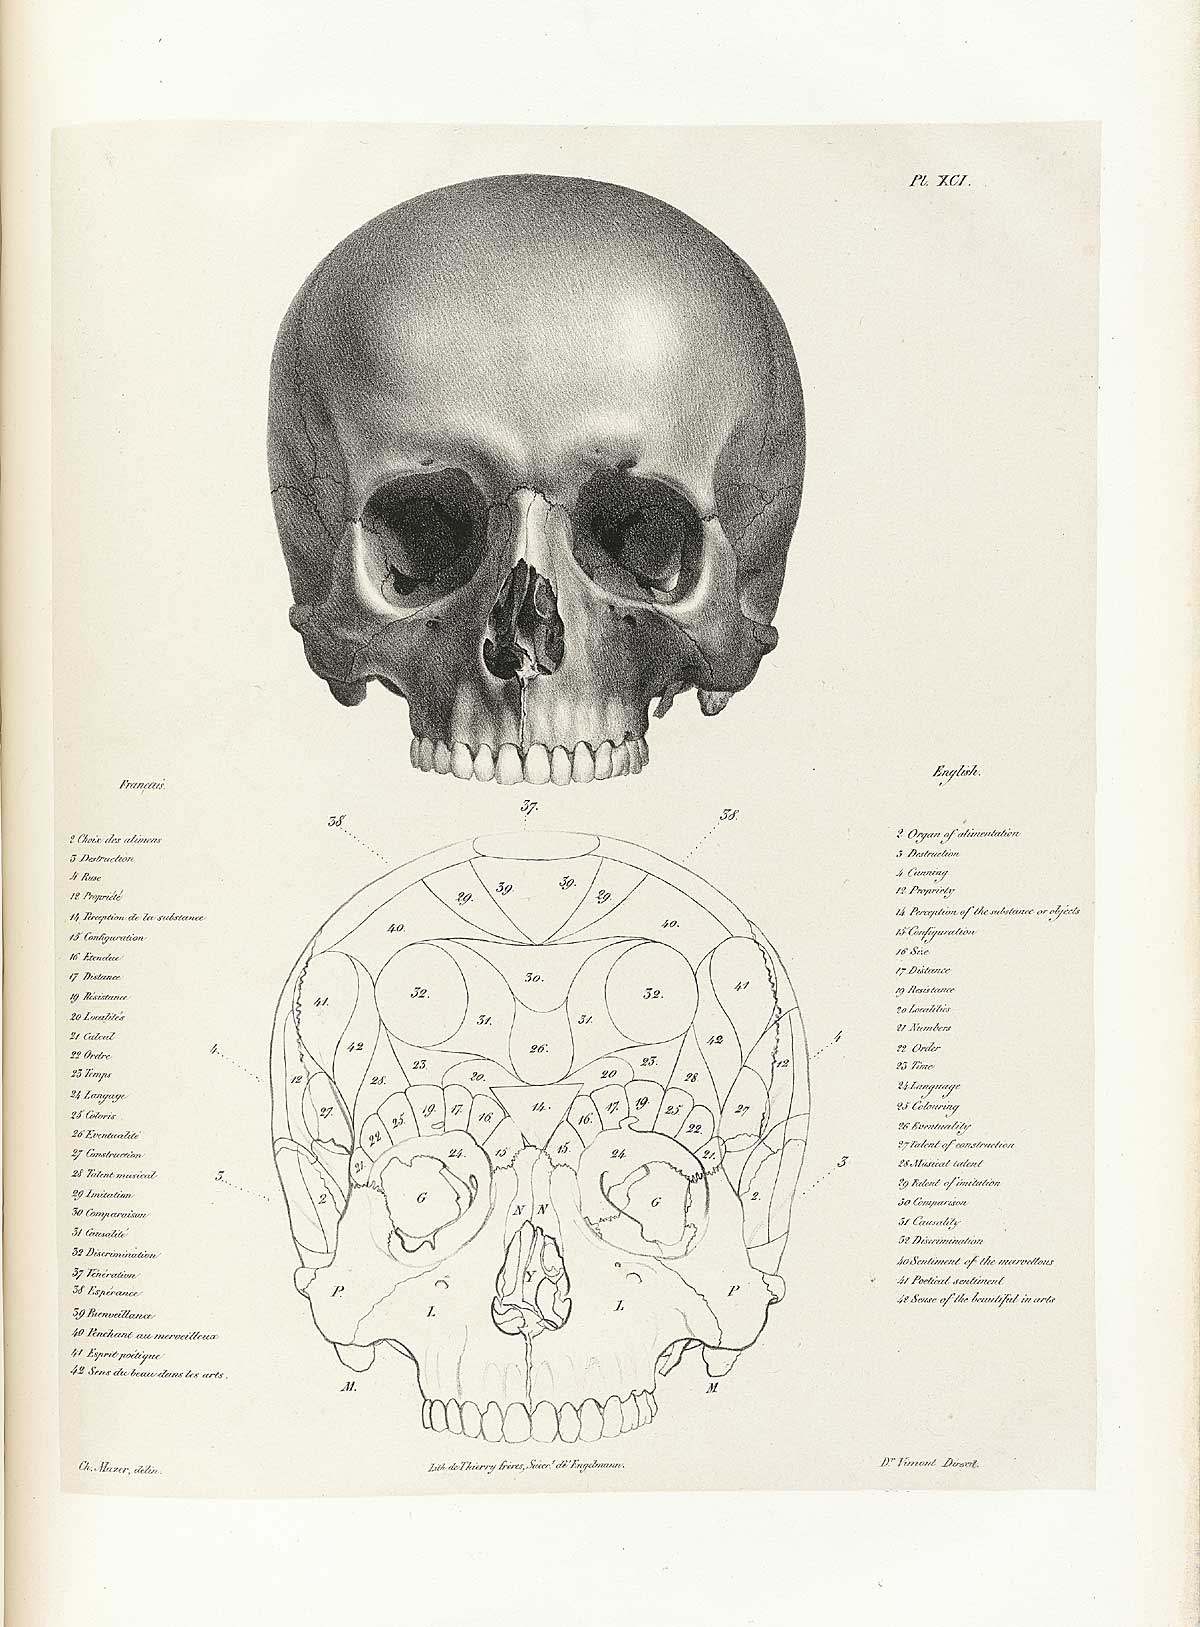 Table 91 of Joseph Vimont's Traité de phrénologie humaine et comparée, featuring the front view of two skulls.